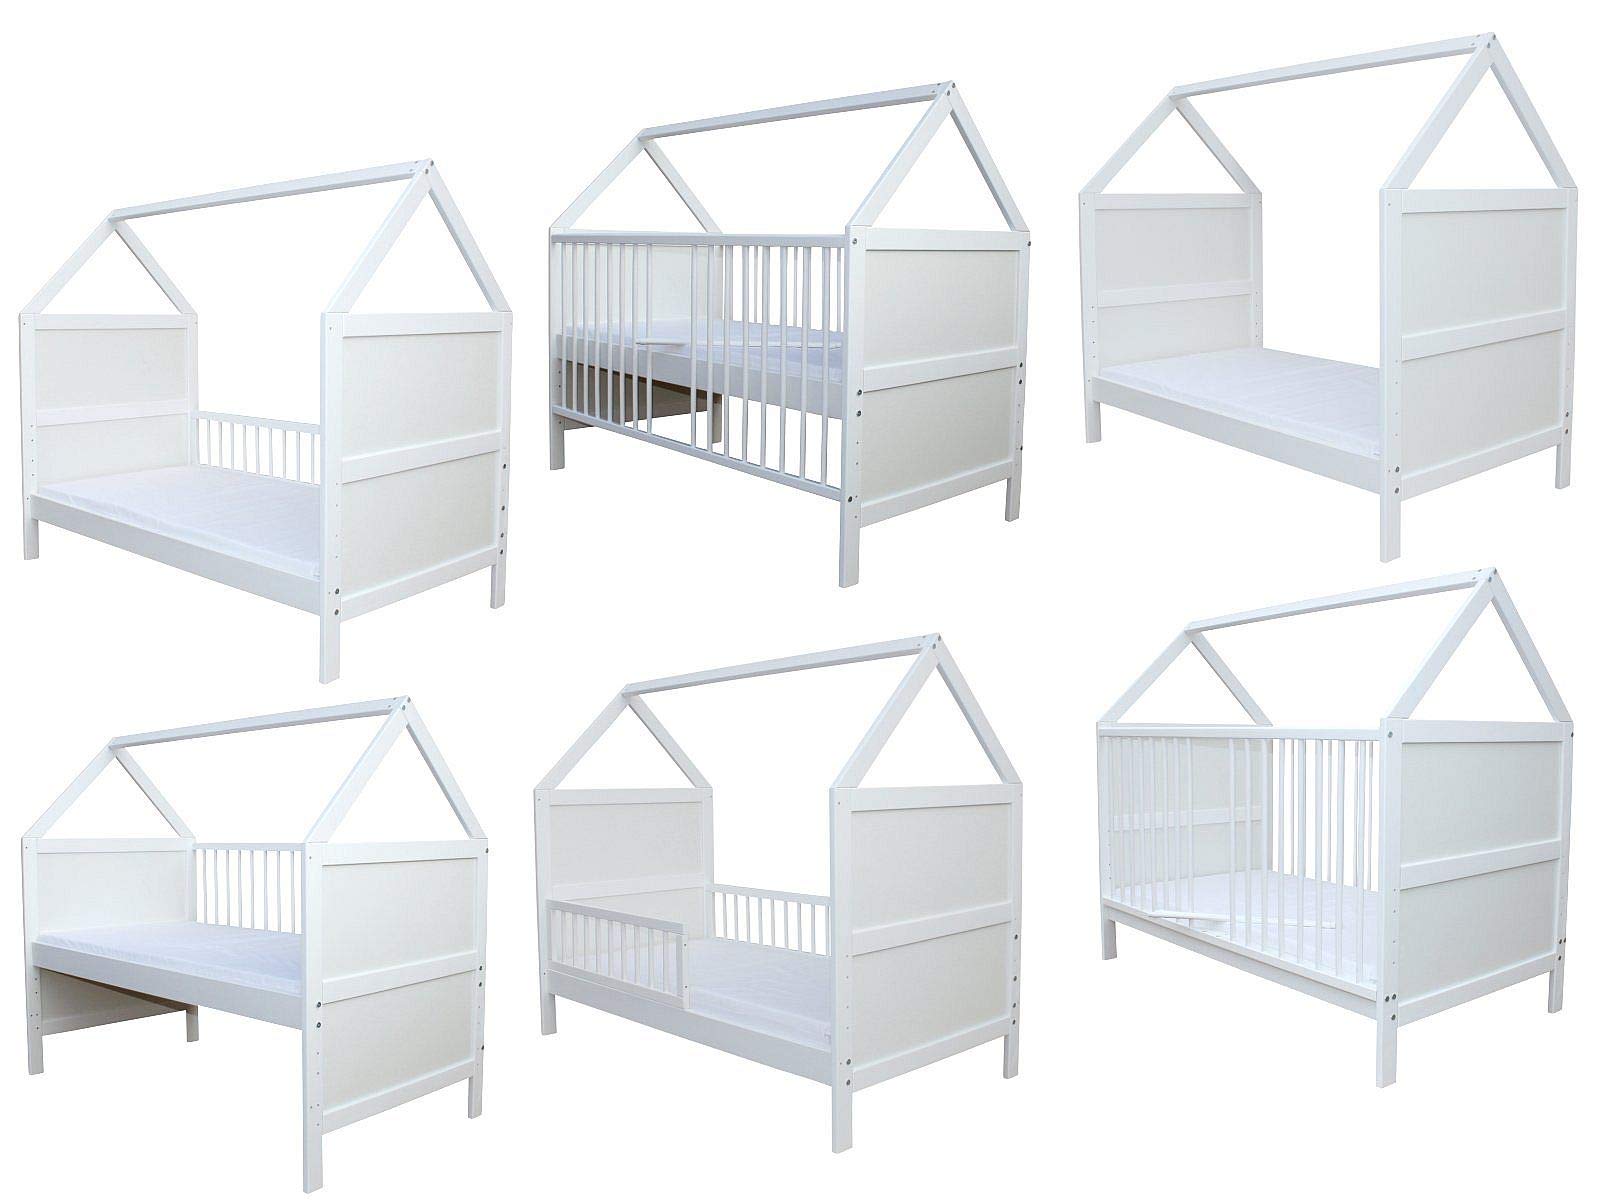 Micoland Babybett Kinderbett Juniorbett Bett Haus 140x70cm mit Matratze Weiss 0 bis 6 Jahre